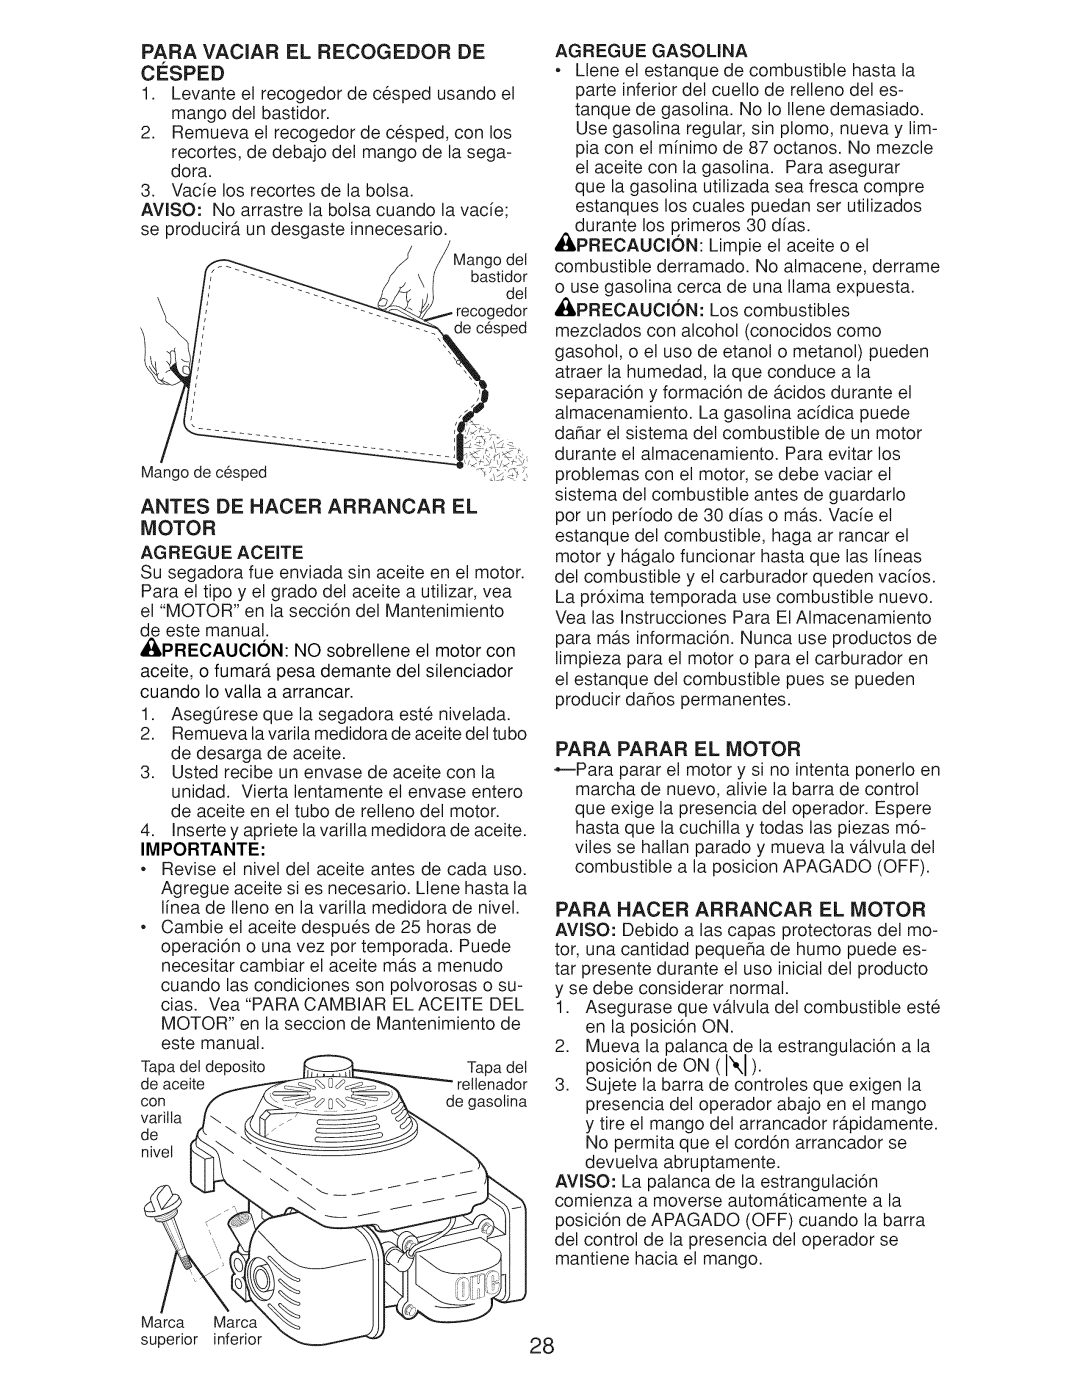 Craftsman Gcv160 manual Motor, Importante, Agregue Gasolina 